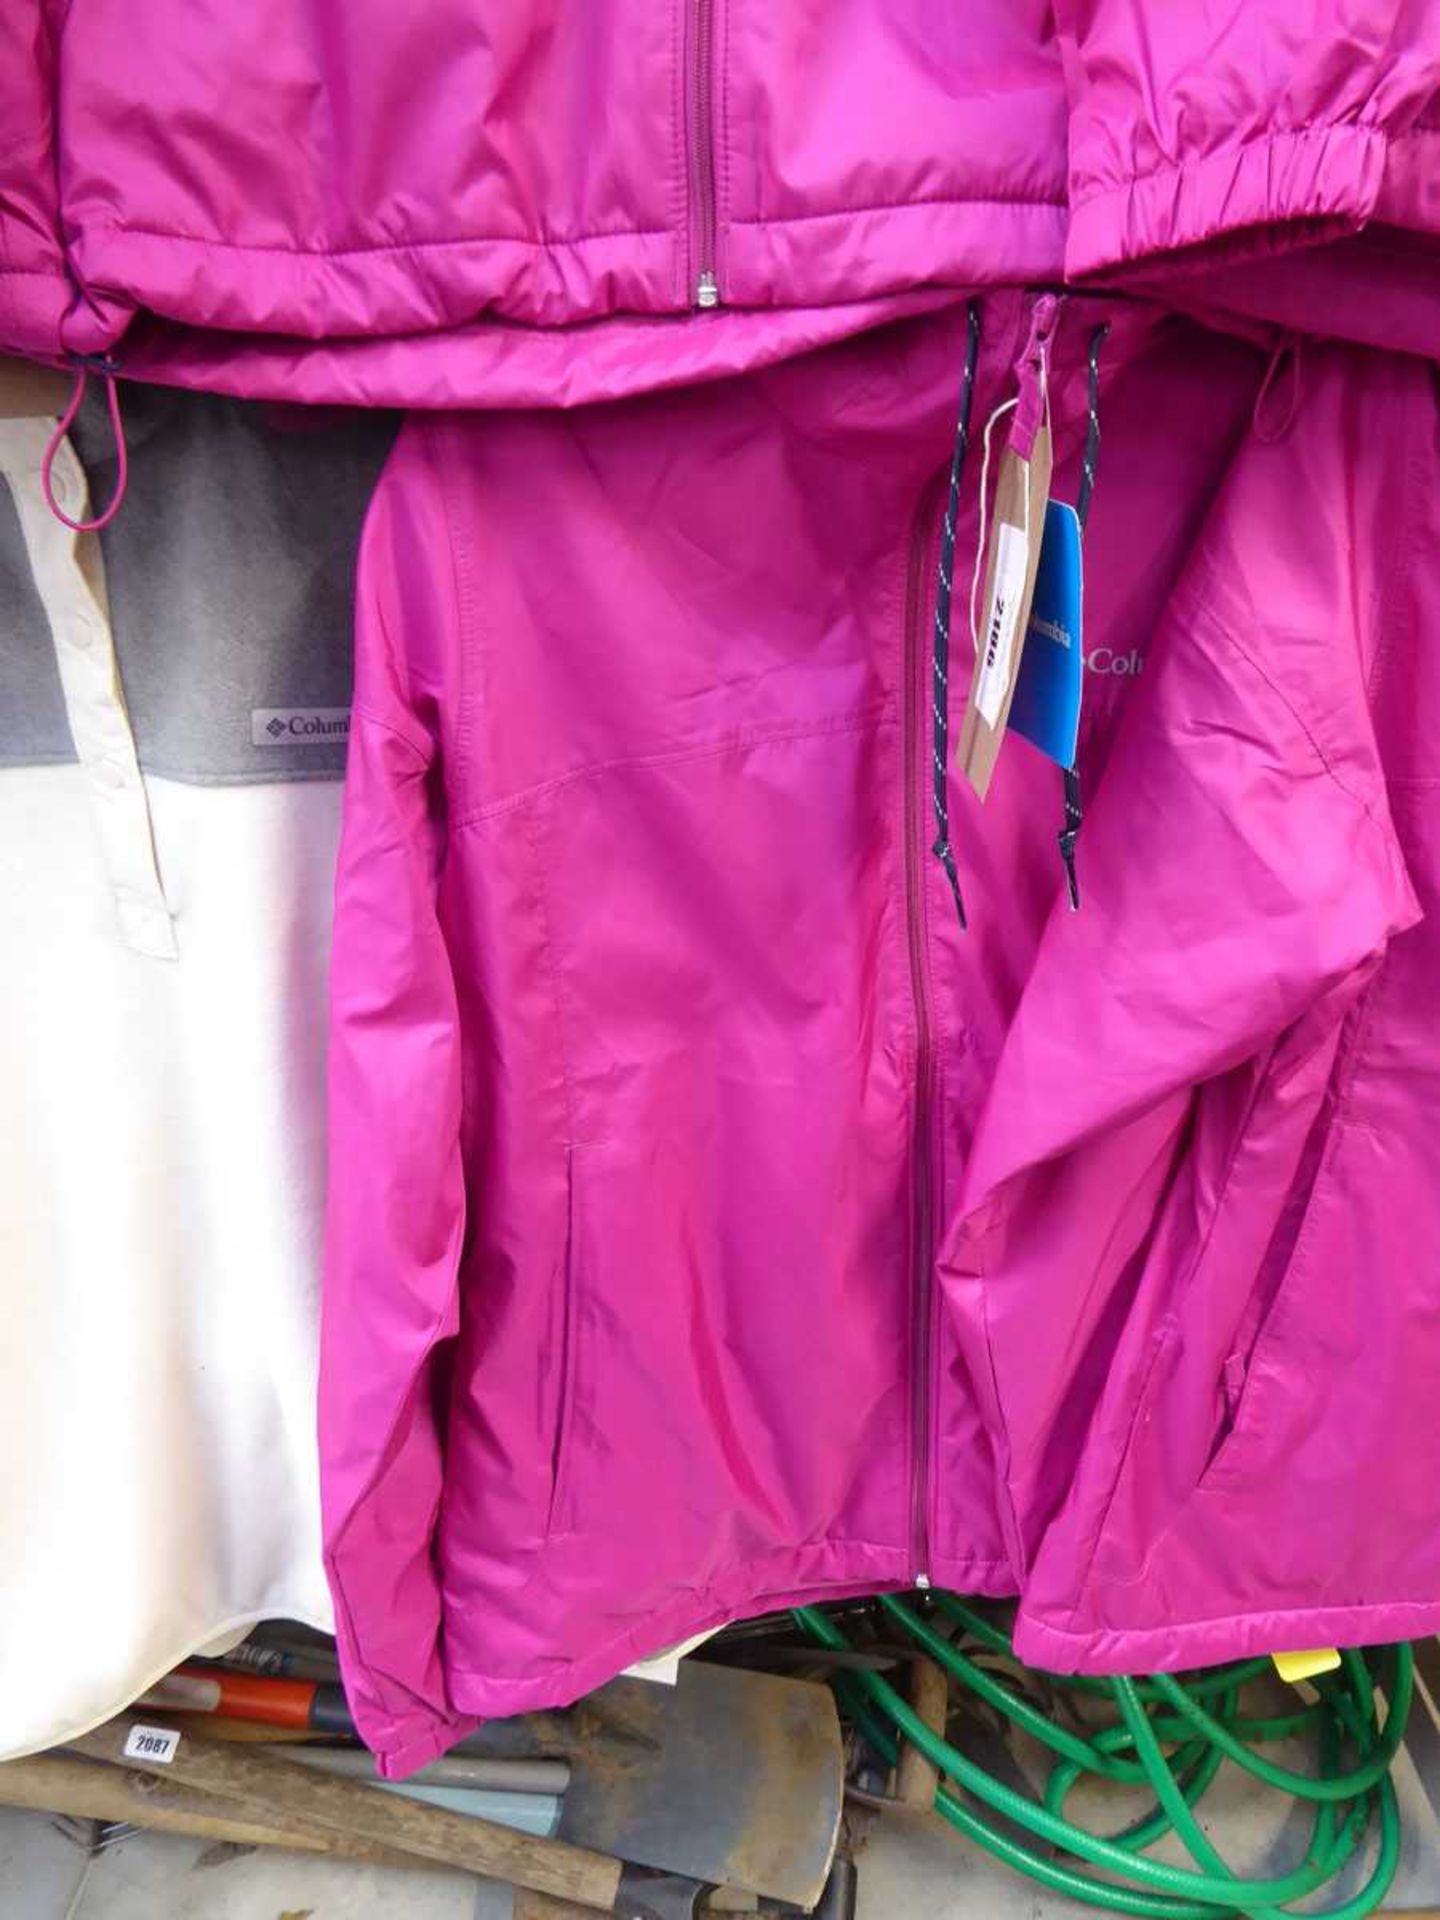 +VAT Columbia fleece lined full zip rain jacket in pink (size S)